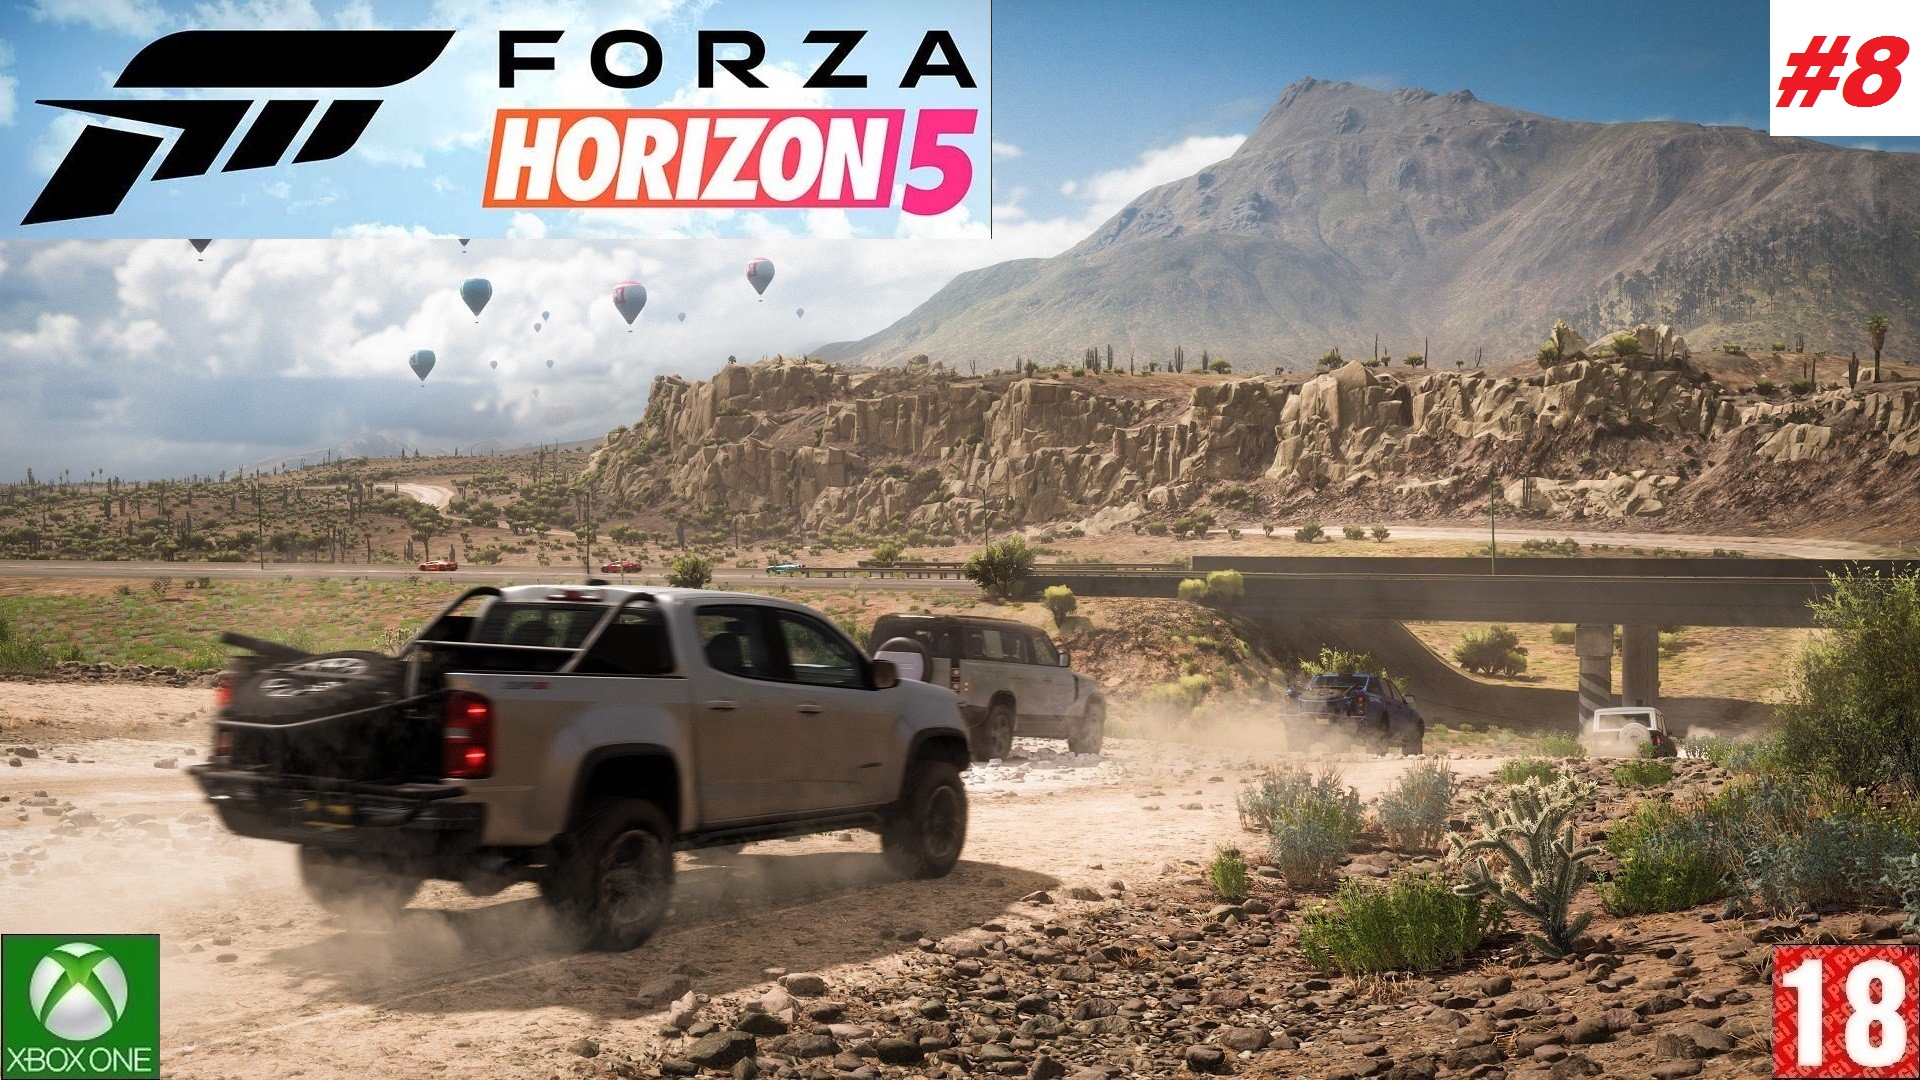 Forza Horizon 5 (Xbox One) - Прохождение - #8, Добро пожаловать в Мексику. (без комментариев)